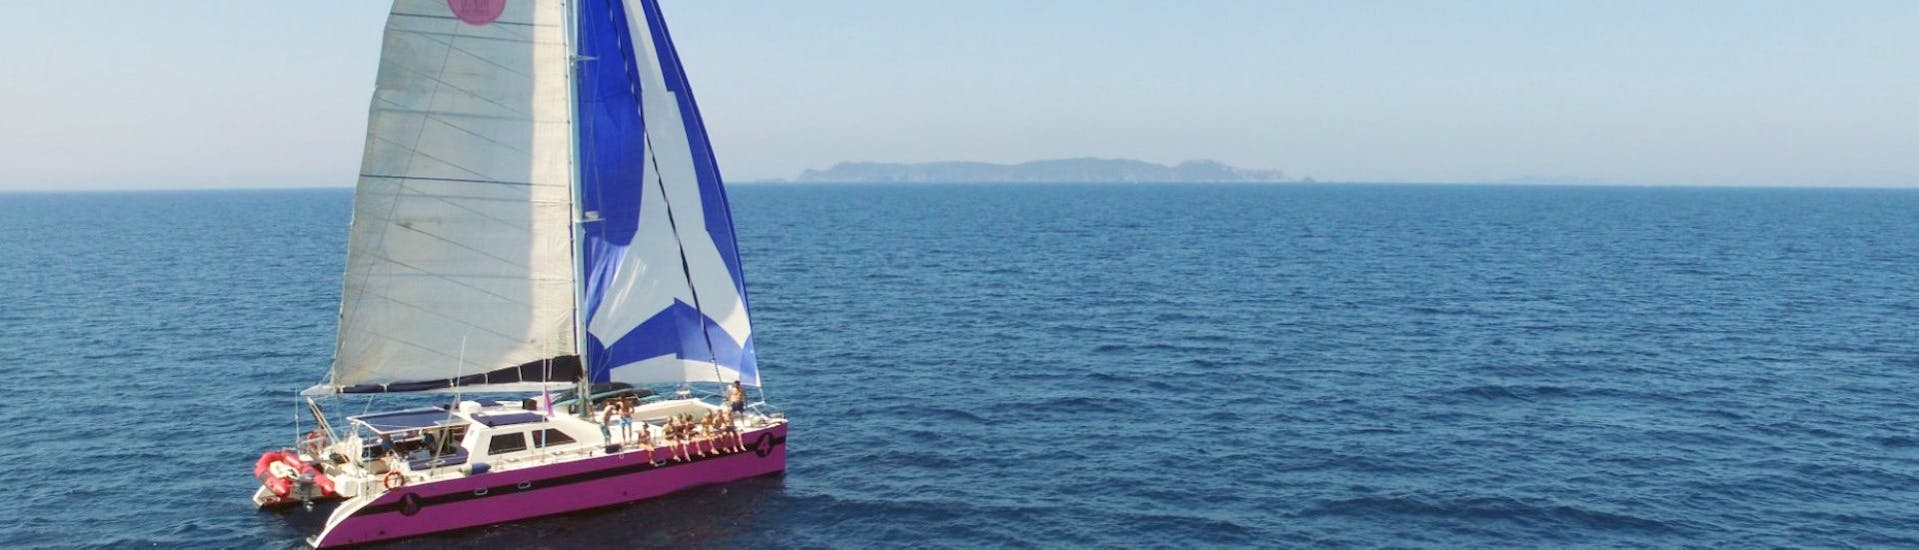 Vistas durante el paseo y fiesta en catamarán en el golfo de Saint-Tropez con Caseneuve Maxi Catamaran.